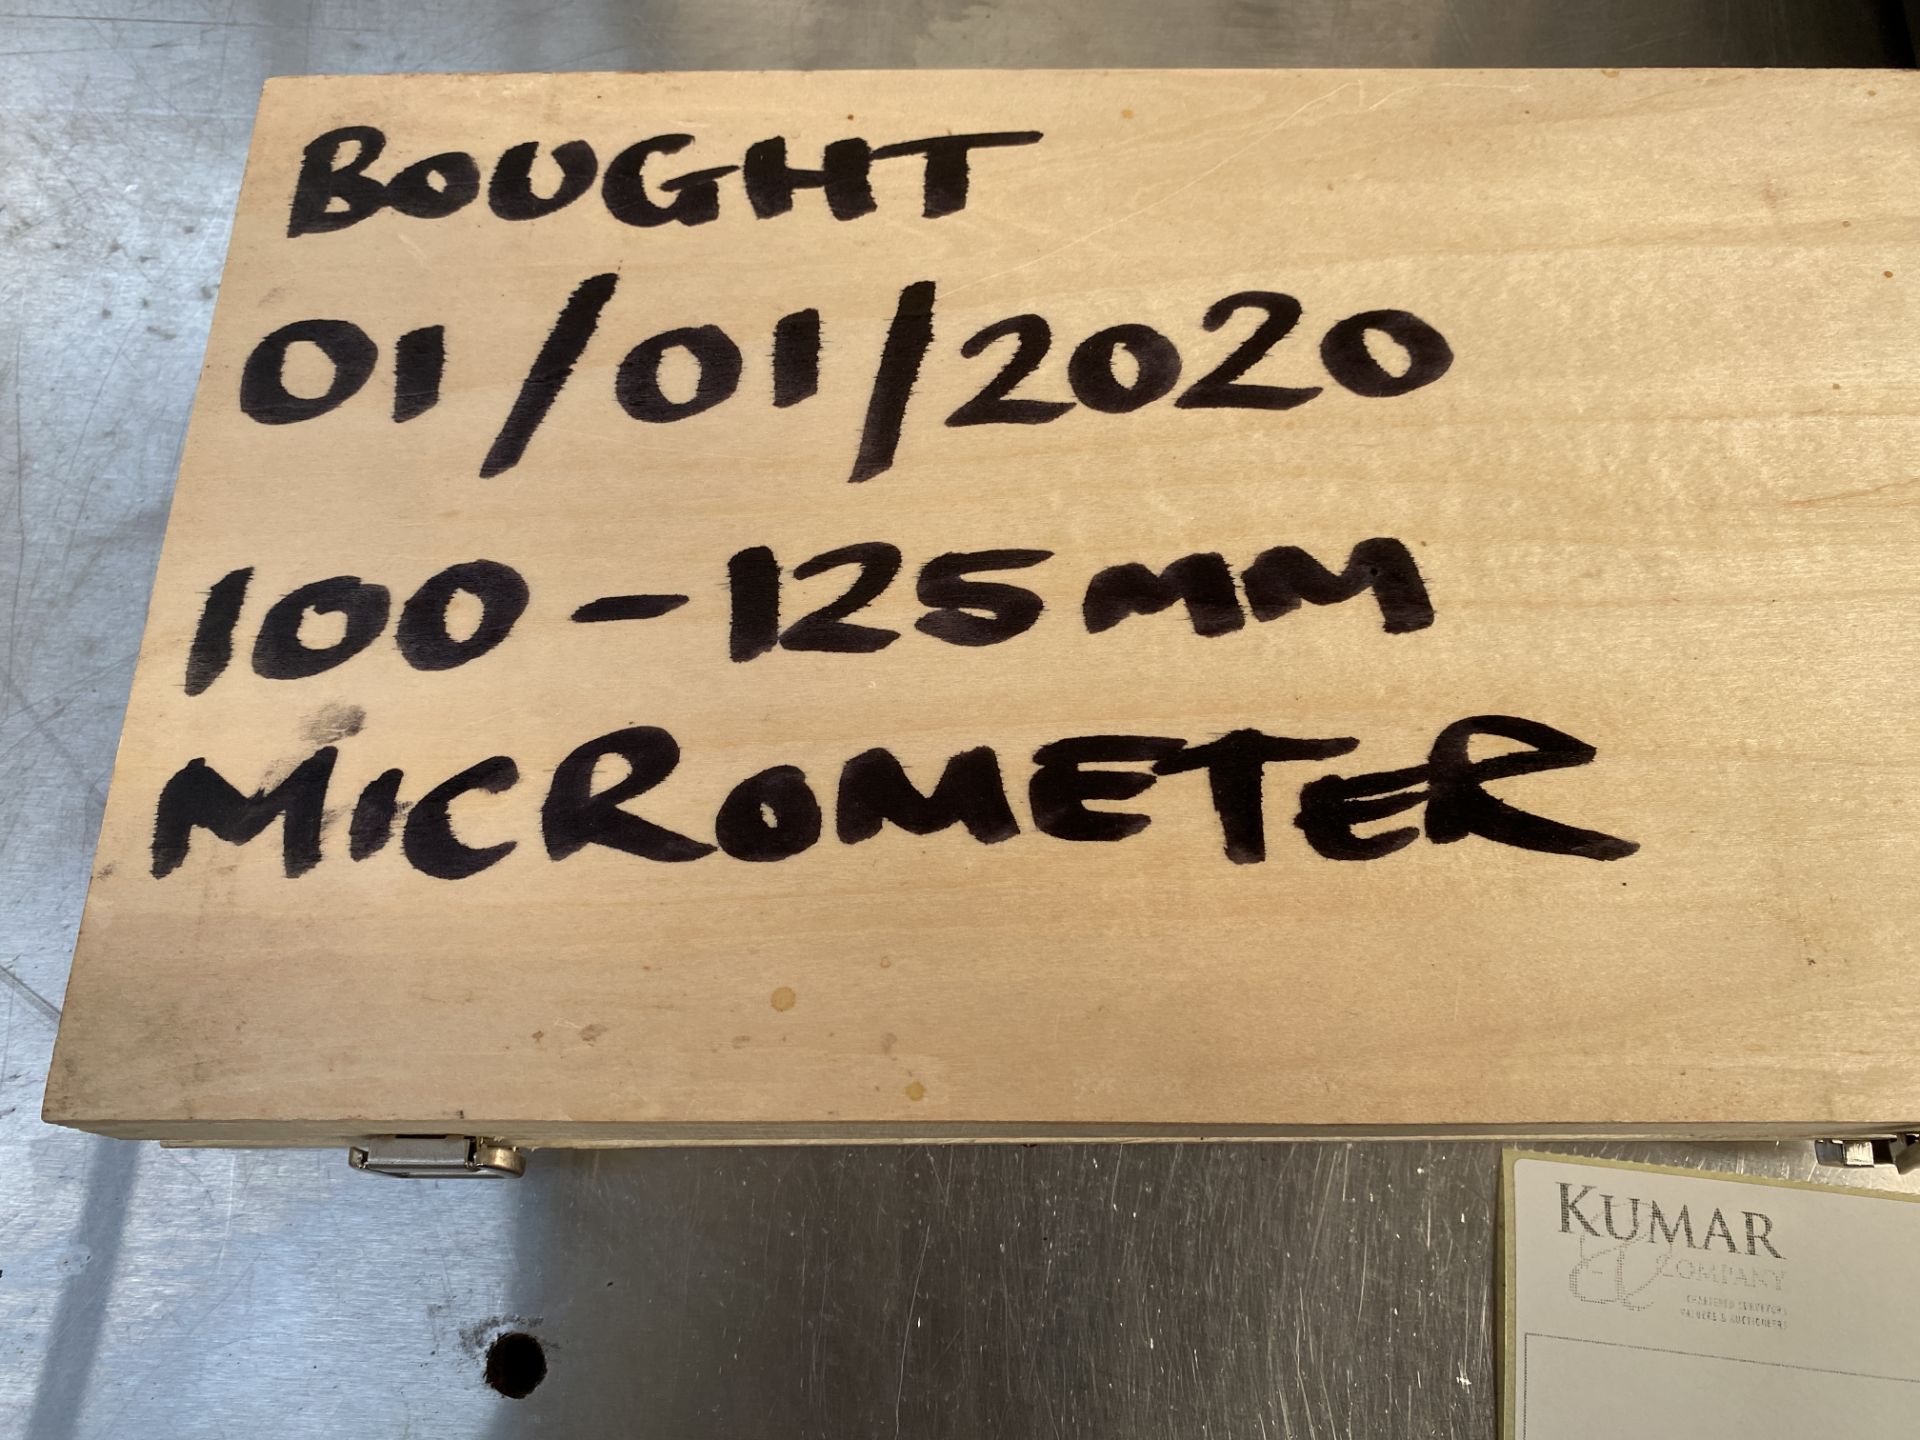 2: Mitutoyo Micrometers Moore & Wright 100-125m Digital Micrometer Mitutoyo 3"-4" Digital Micrometer - Image 3 of 7